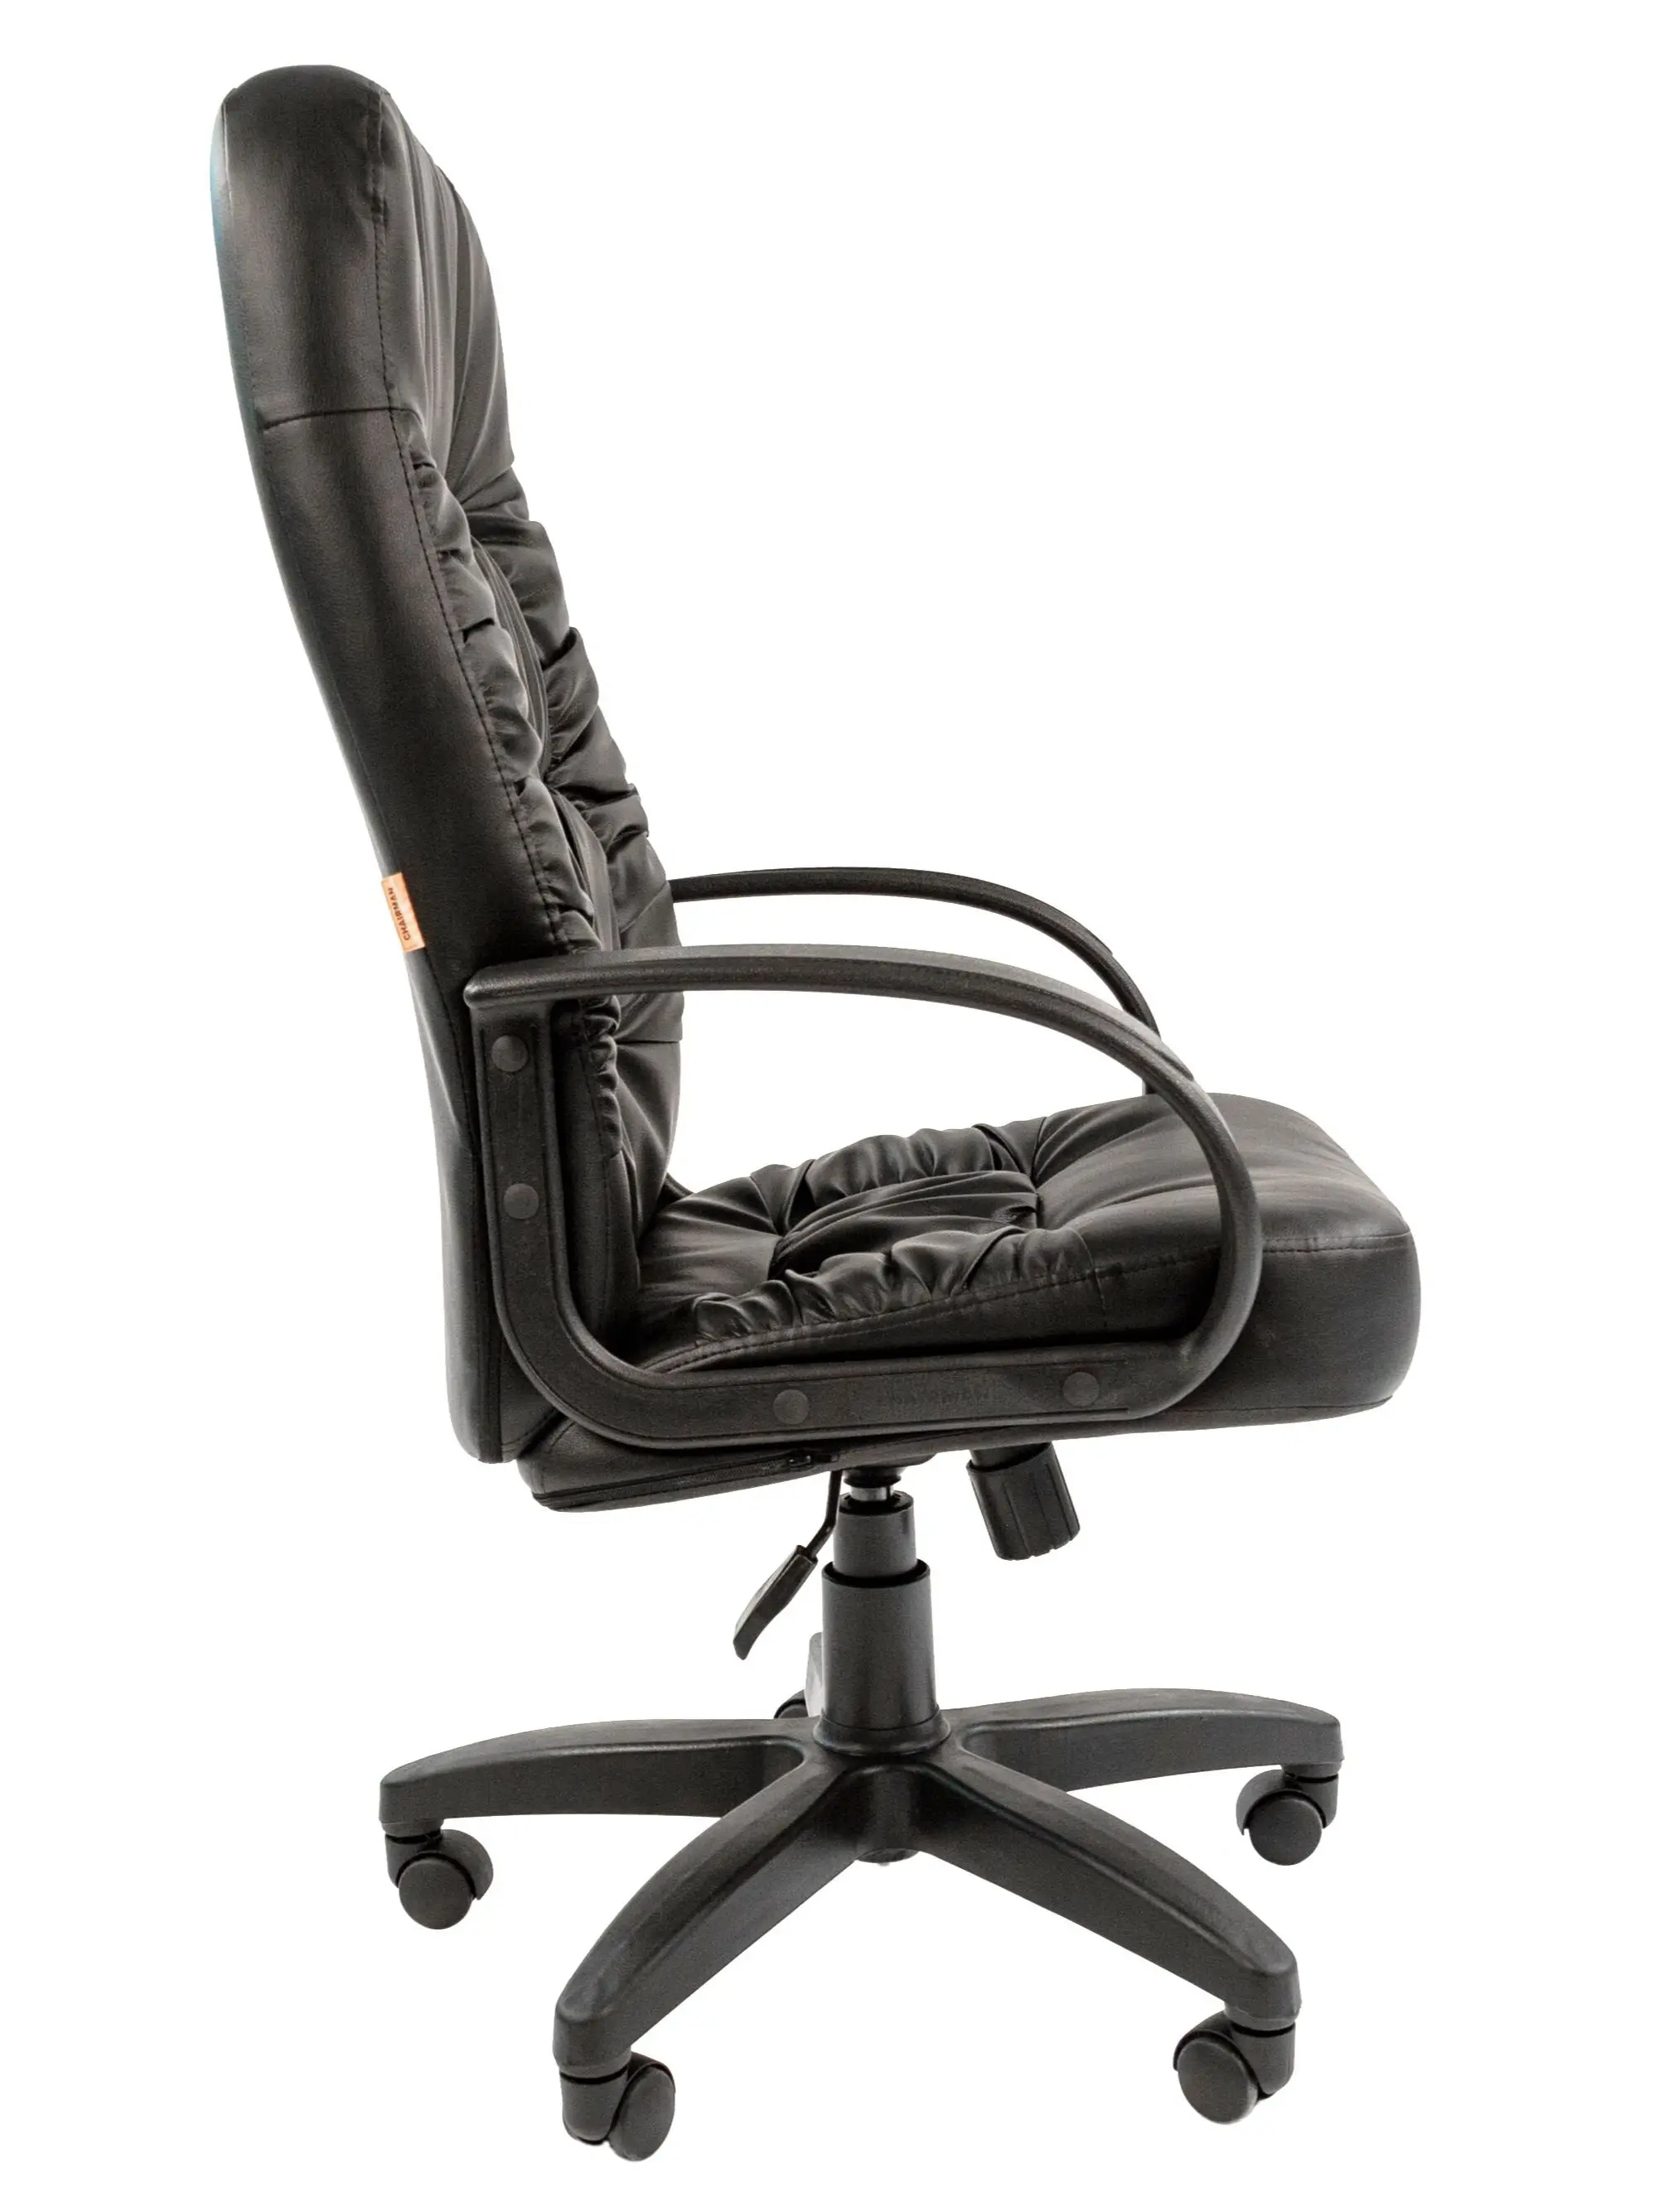 кресло для руководителя Chairman 416 в экокоже с низкой спинкой дома офиса - купить по